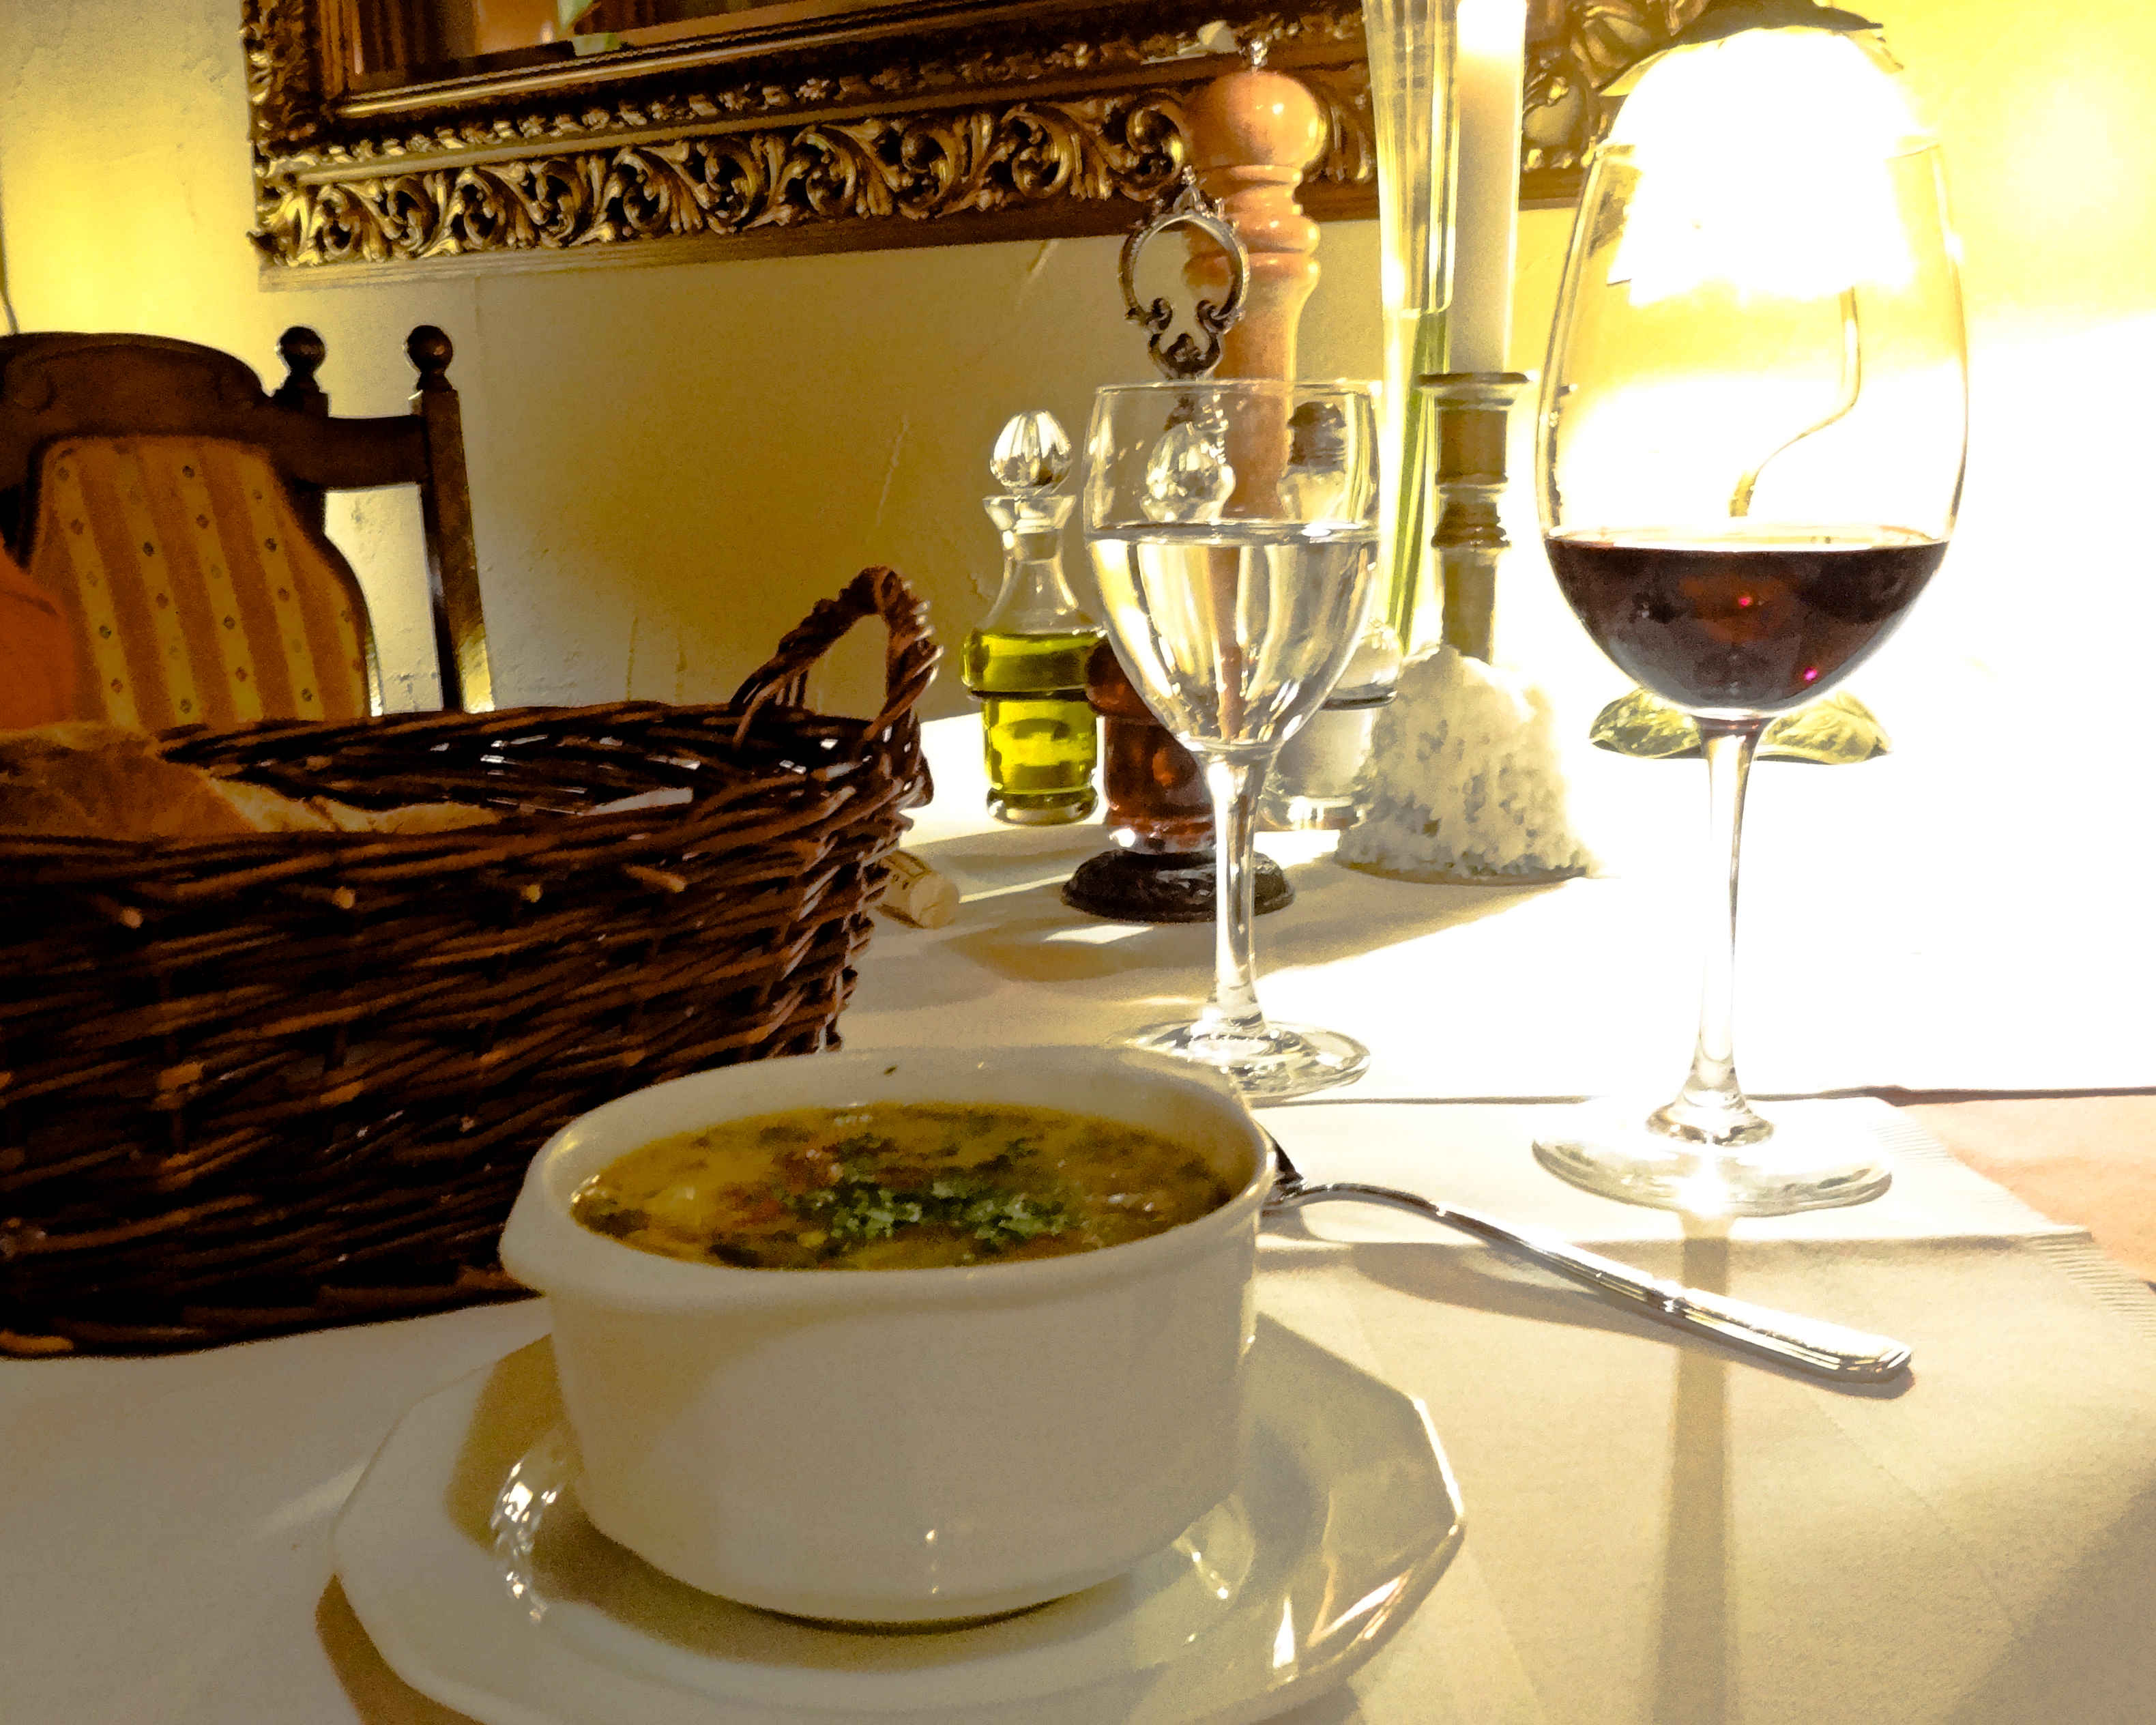 restauracja włoska we wrocławiu kolacja we włoskim stylu tiramisu angellovesdreams